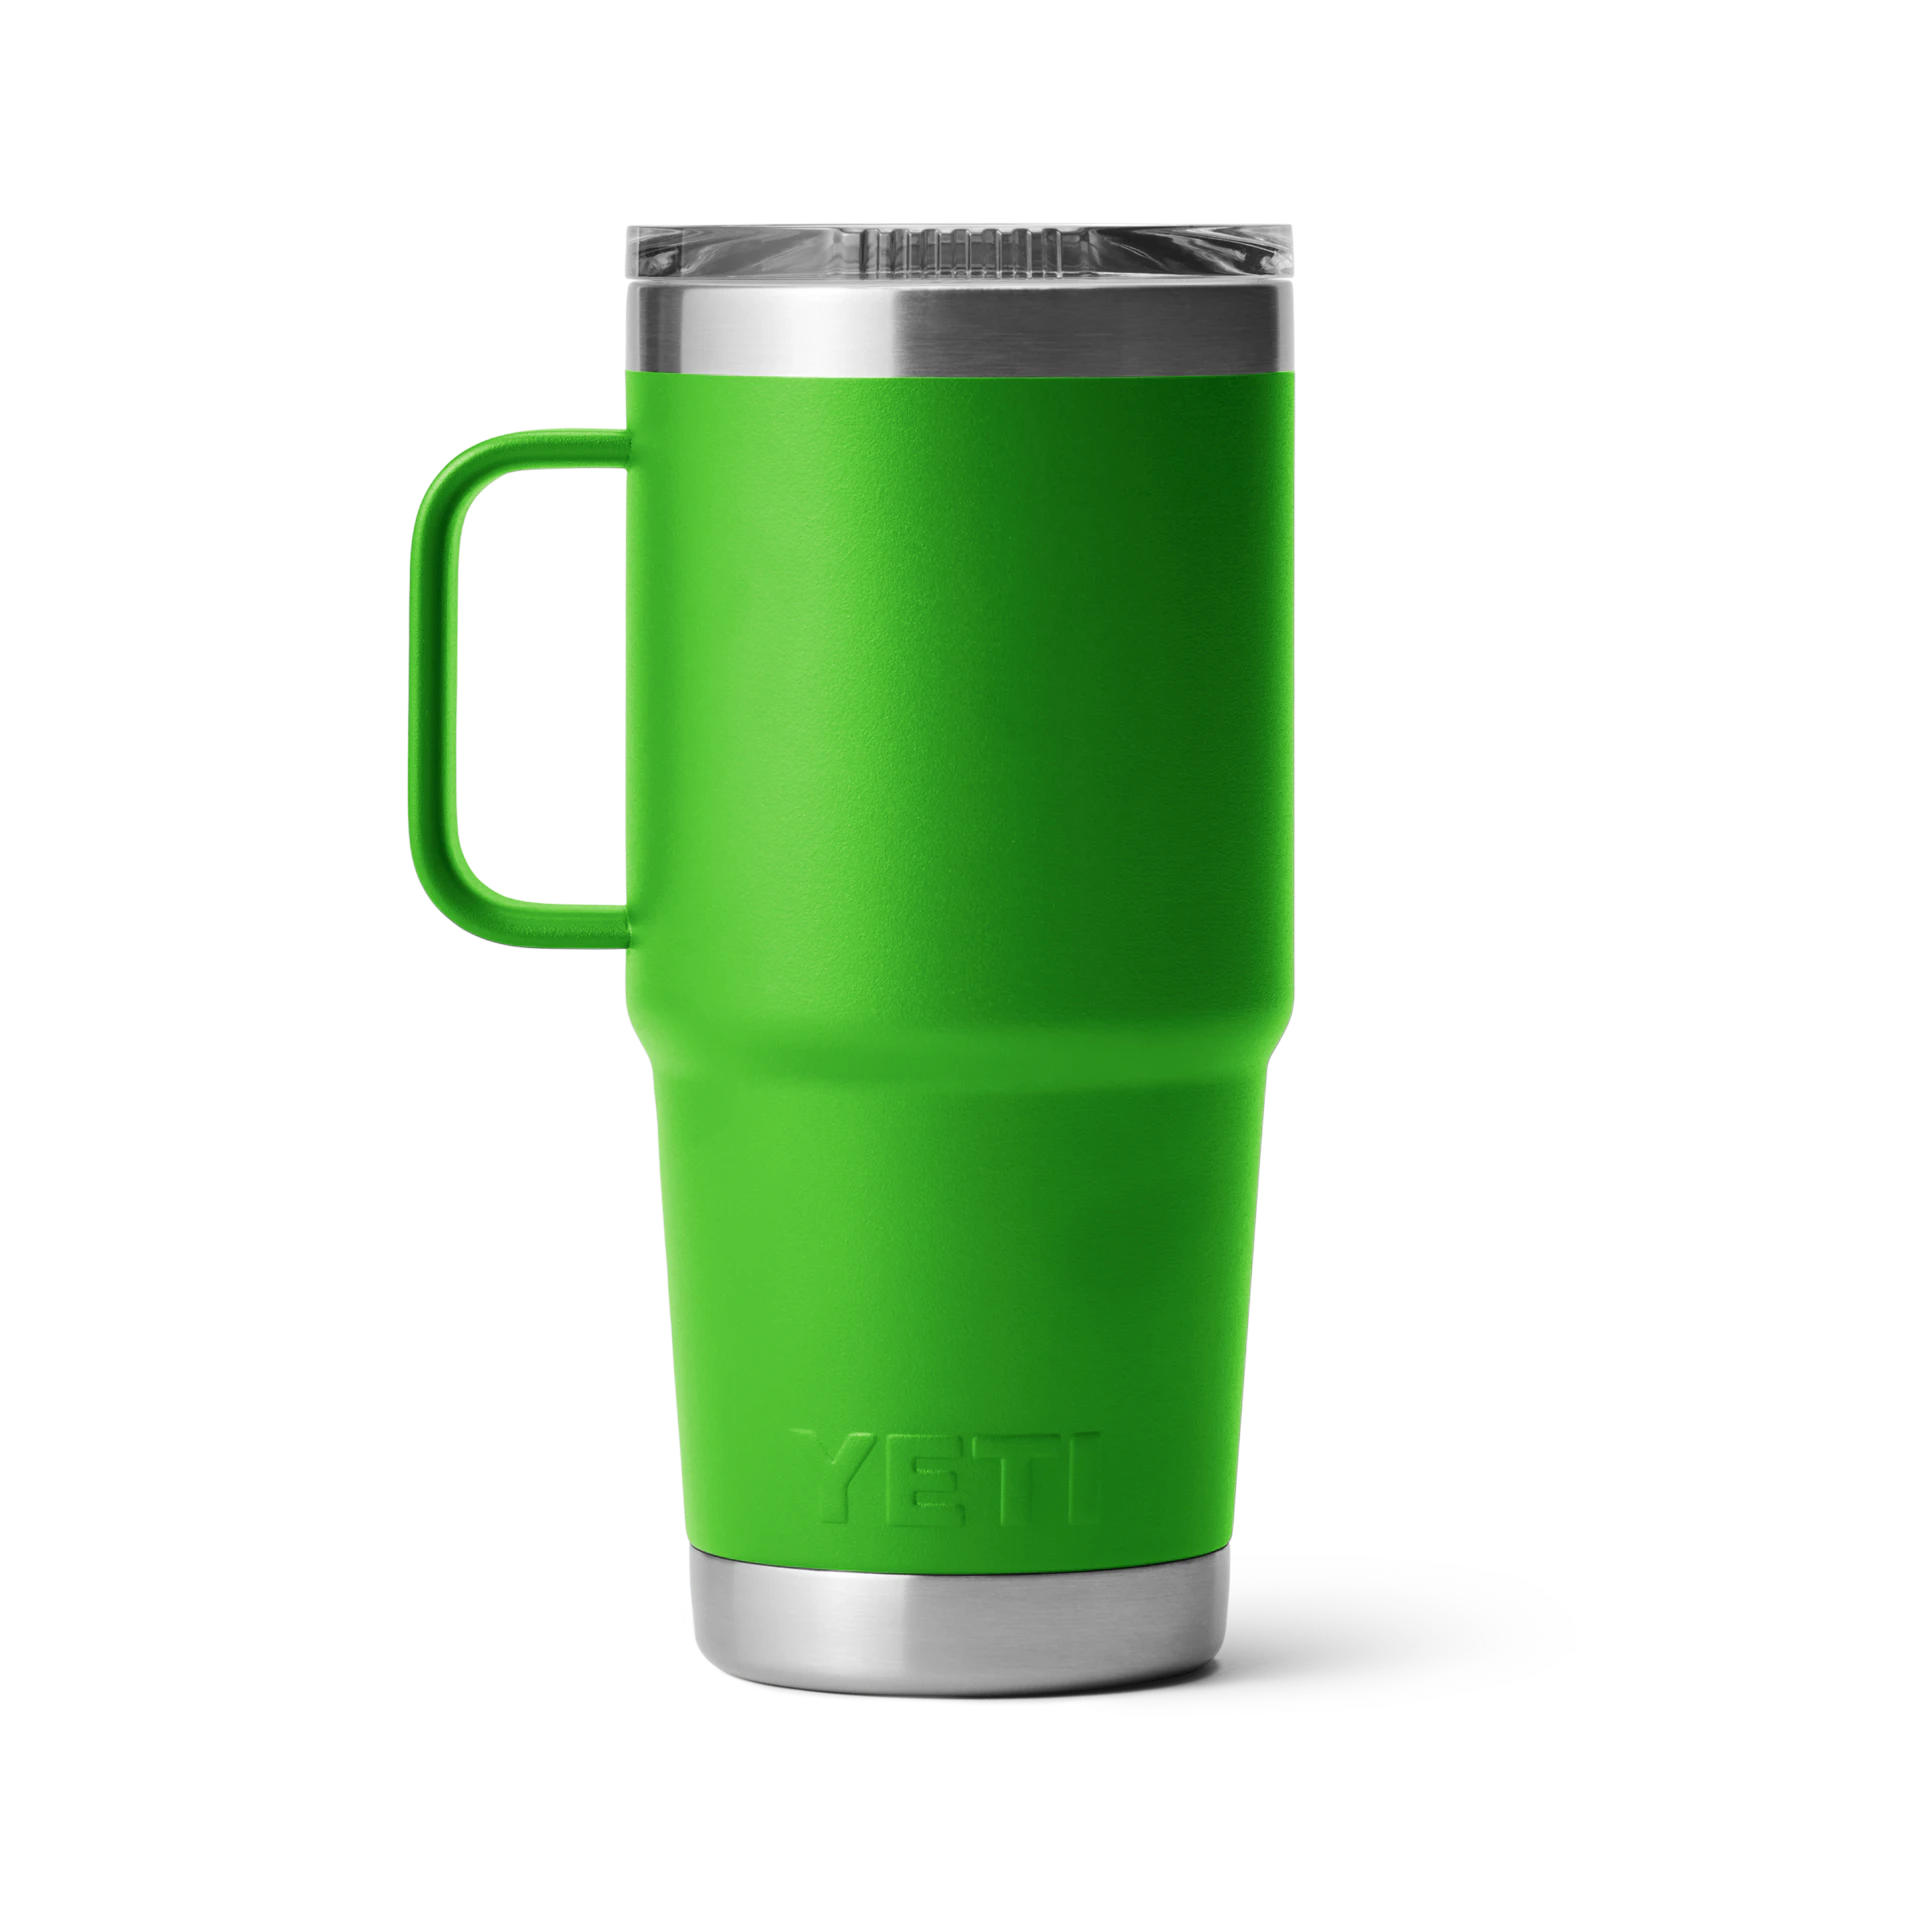 Yeti Rambler Canopy Green 20oz Travel Mug